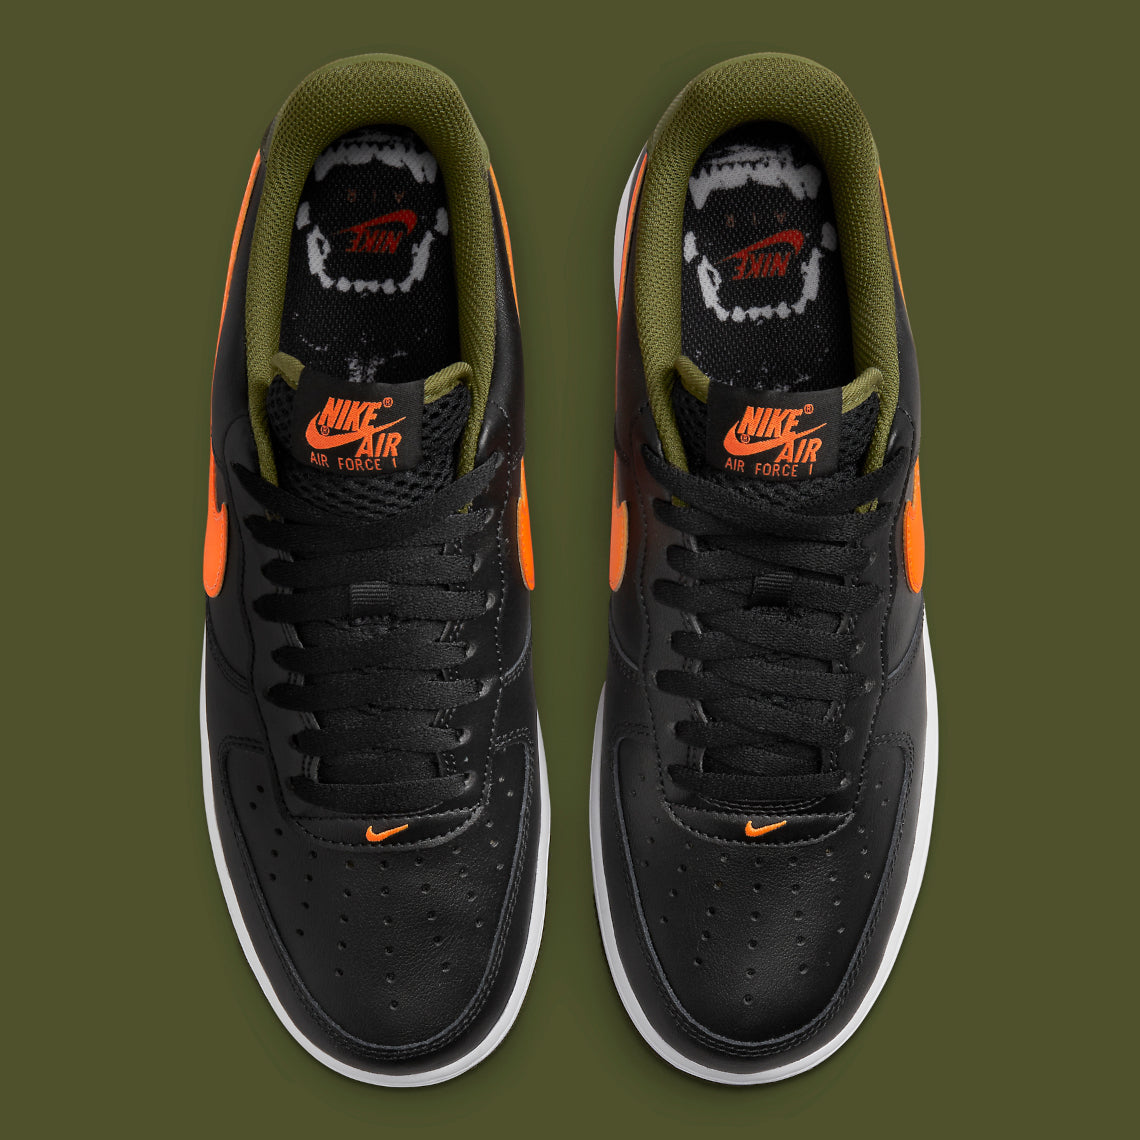 Nike Air Force 1, як елемент паку “Hoops Pack” – hypesneakershop